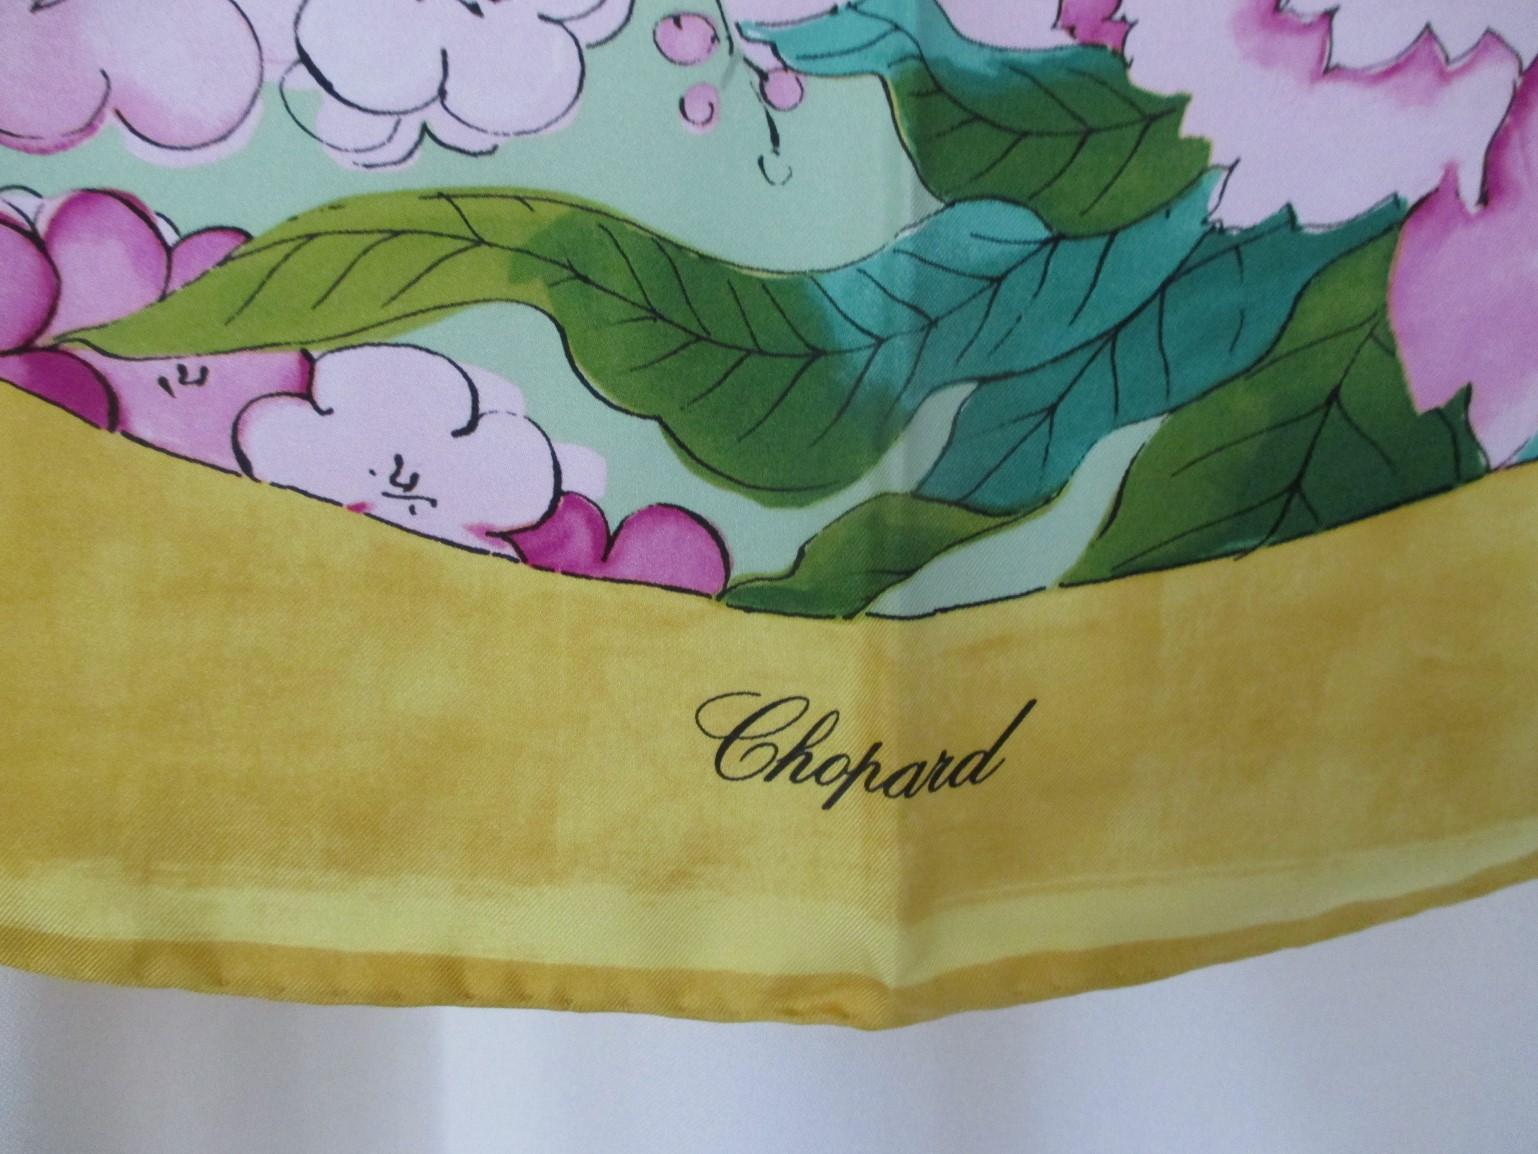 Ce foulard jaune de Chopard est un véritable foulard de collection, à posséder pour le porter, le montrer ou l'encadrer. Le coloris parfait pour accessoiriser votre garde-robe.

Nous proposons d'autres foulards en soie Hermes, Gucci, voir notre